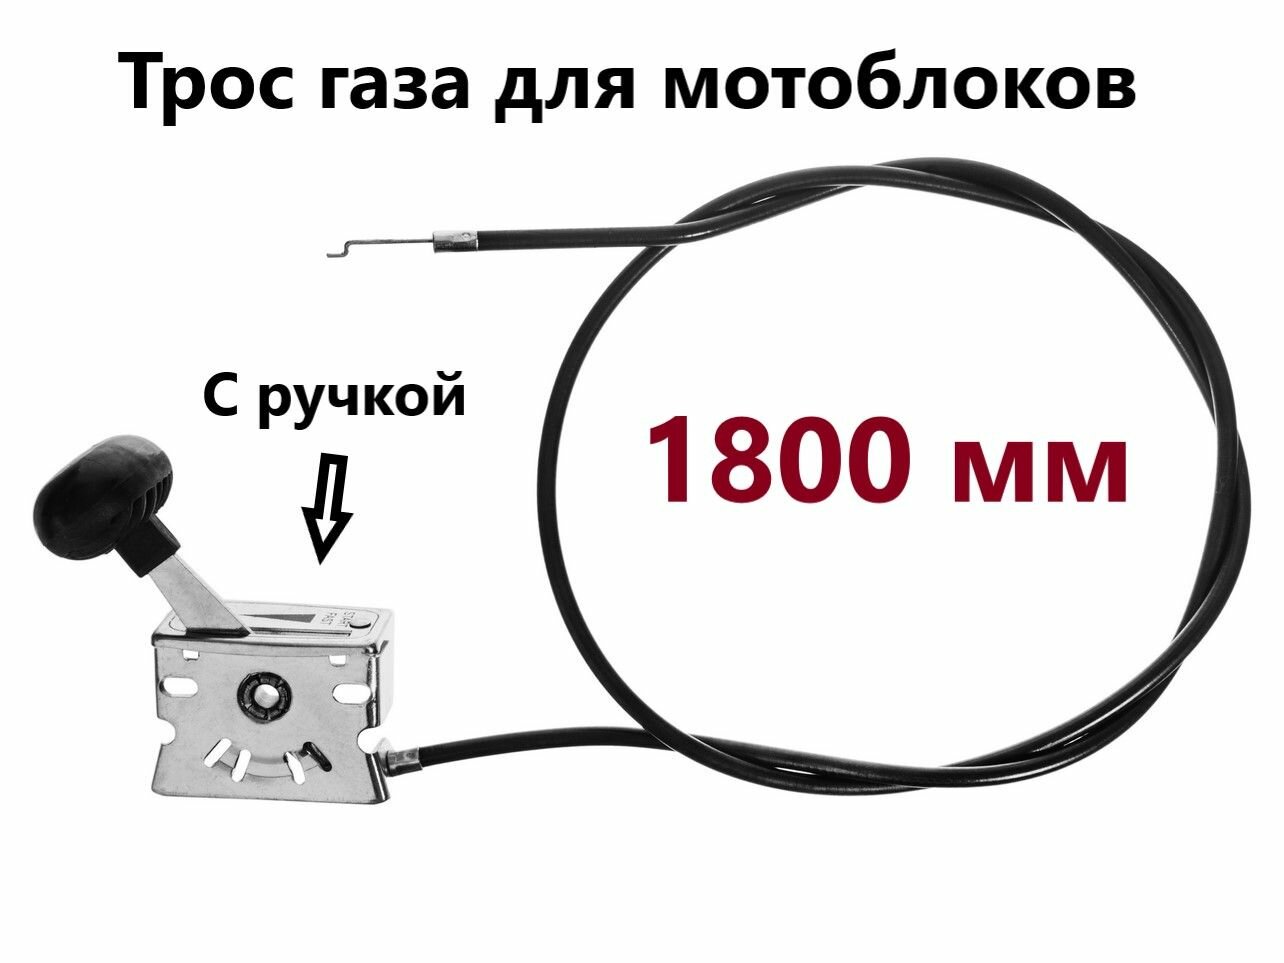 Трос газа для мотоблока (в сборе с ручкой) 1800 мм